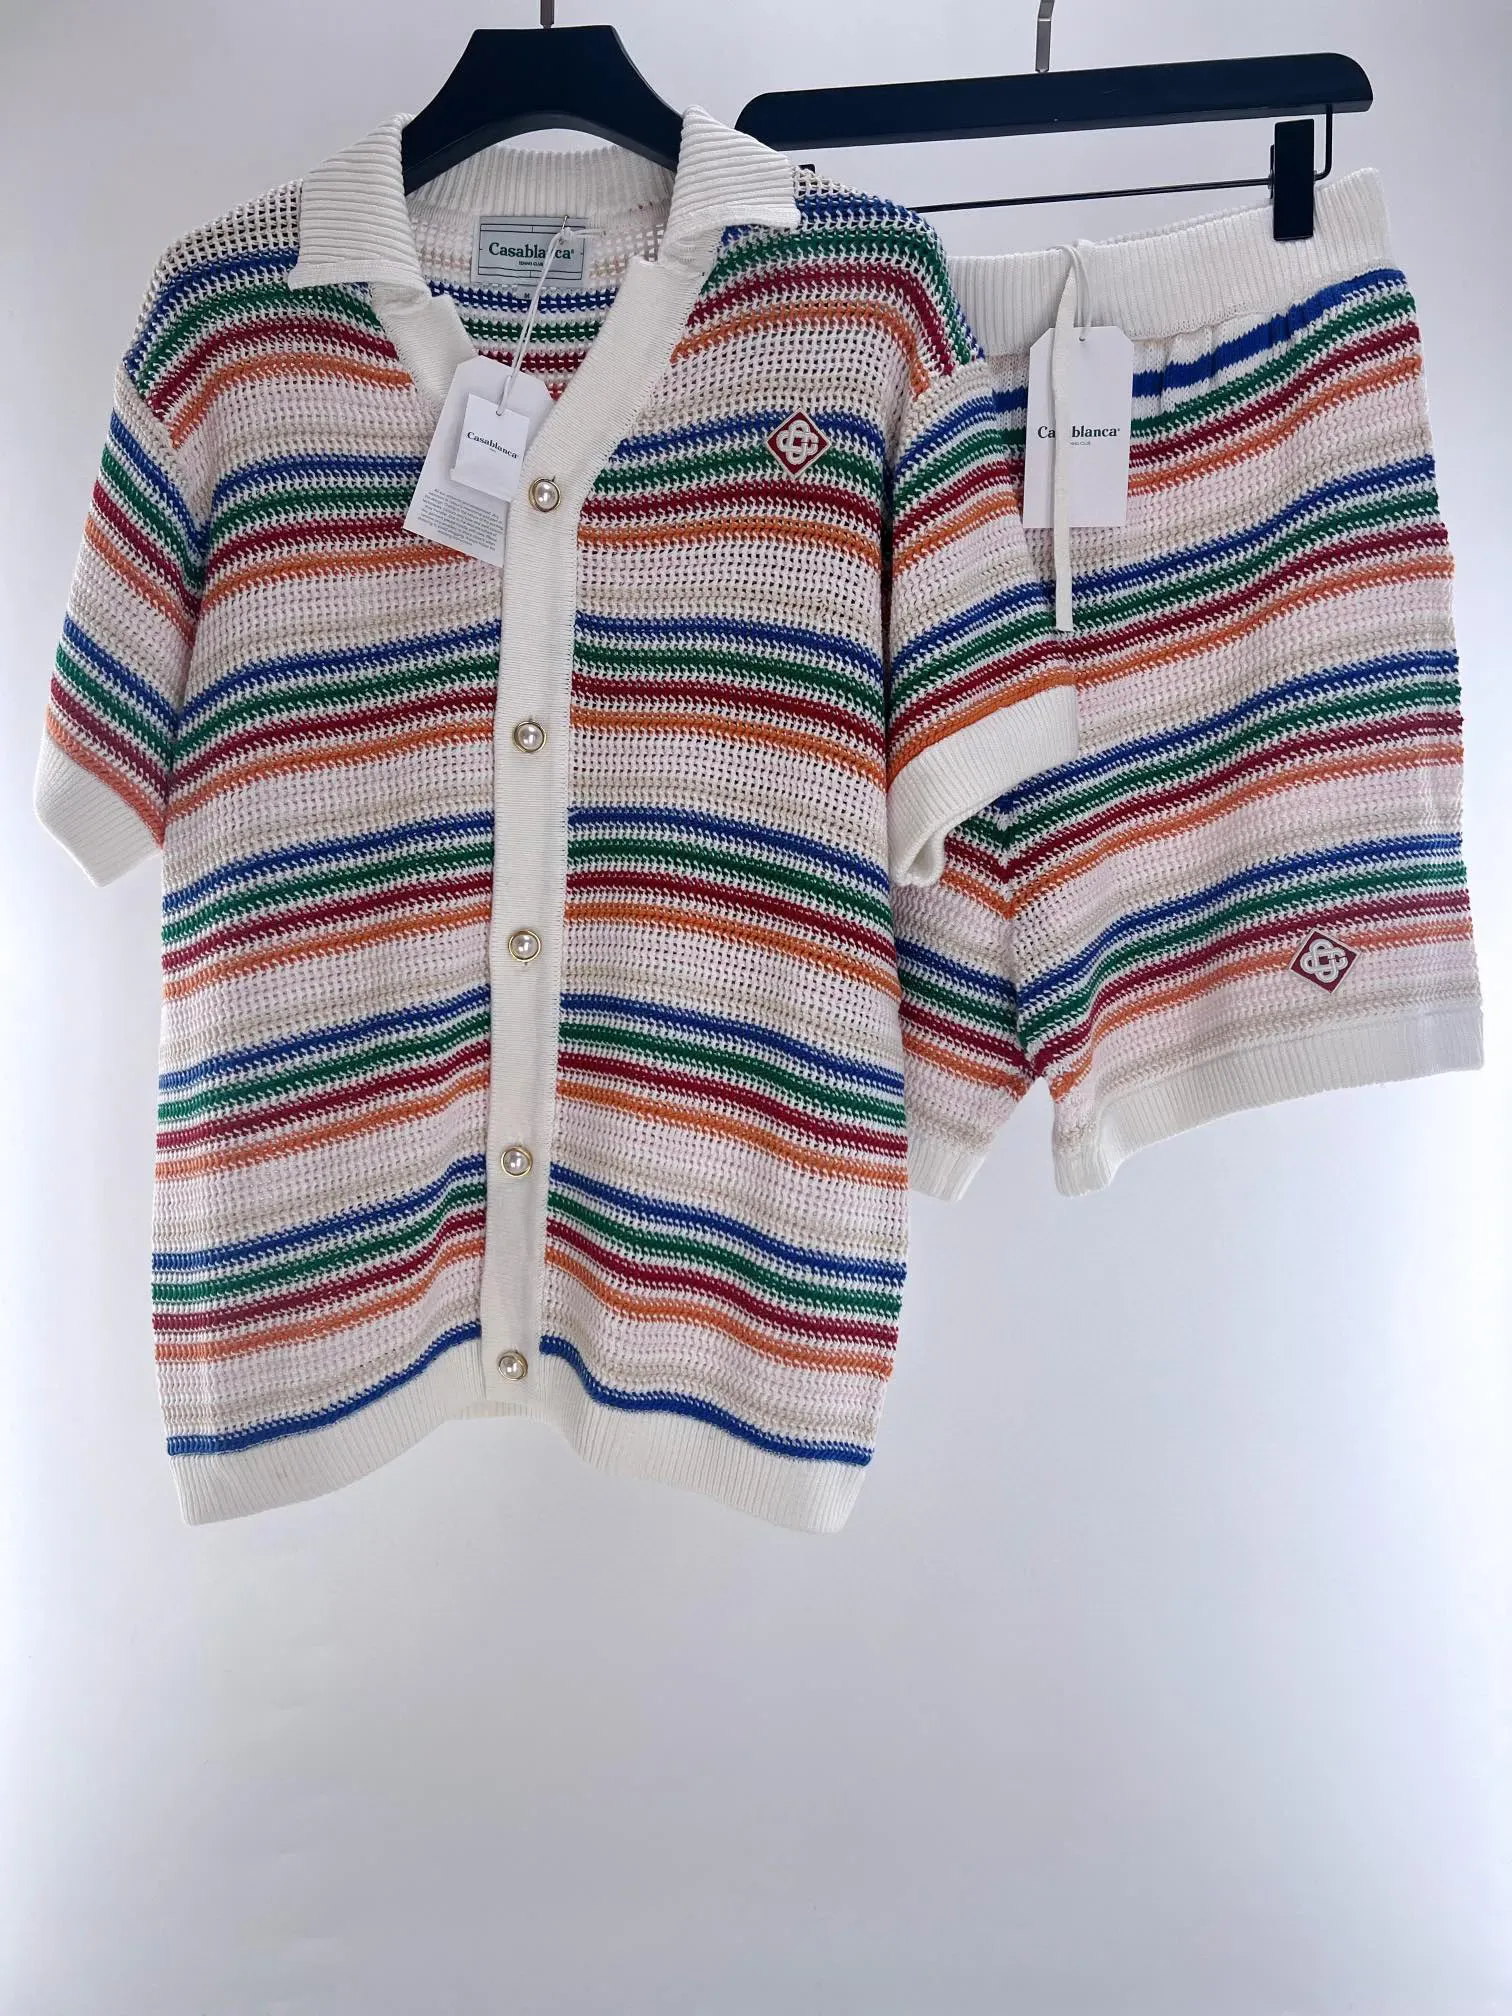 صيف للرجال مصمم القمصان قميص Casablanc Man Womens Tees العلامة التجارية قصيرة الأكمام من أعلى بيع الرجال الفاخرة الهيب هوب الملابس لنا s-xl